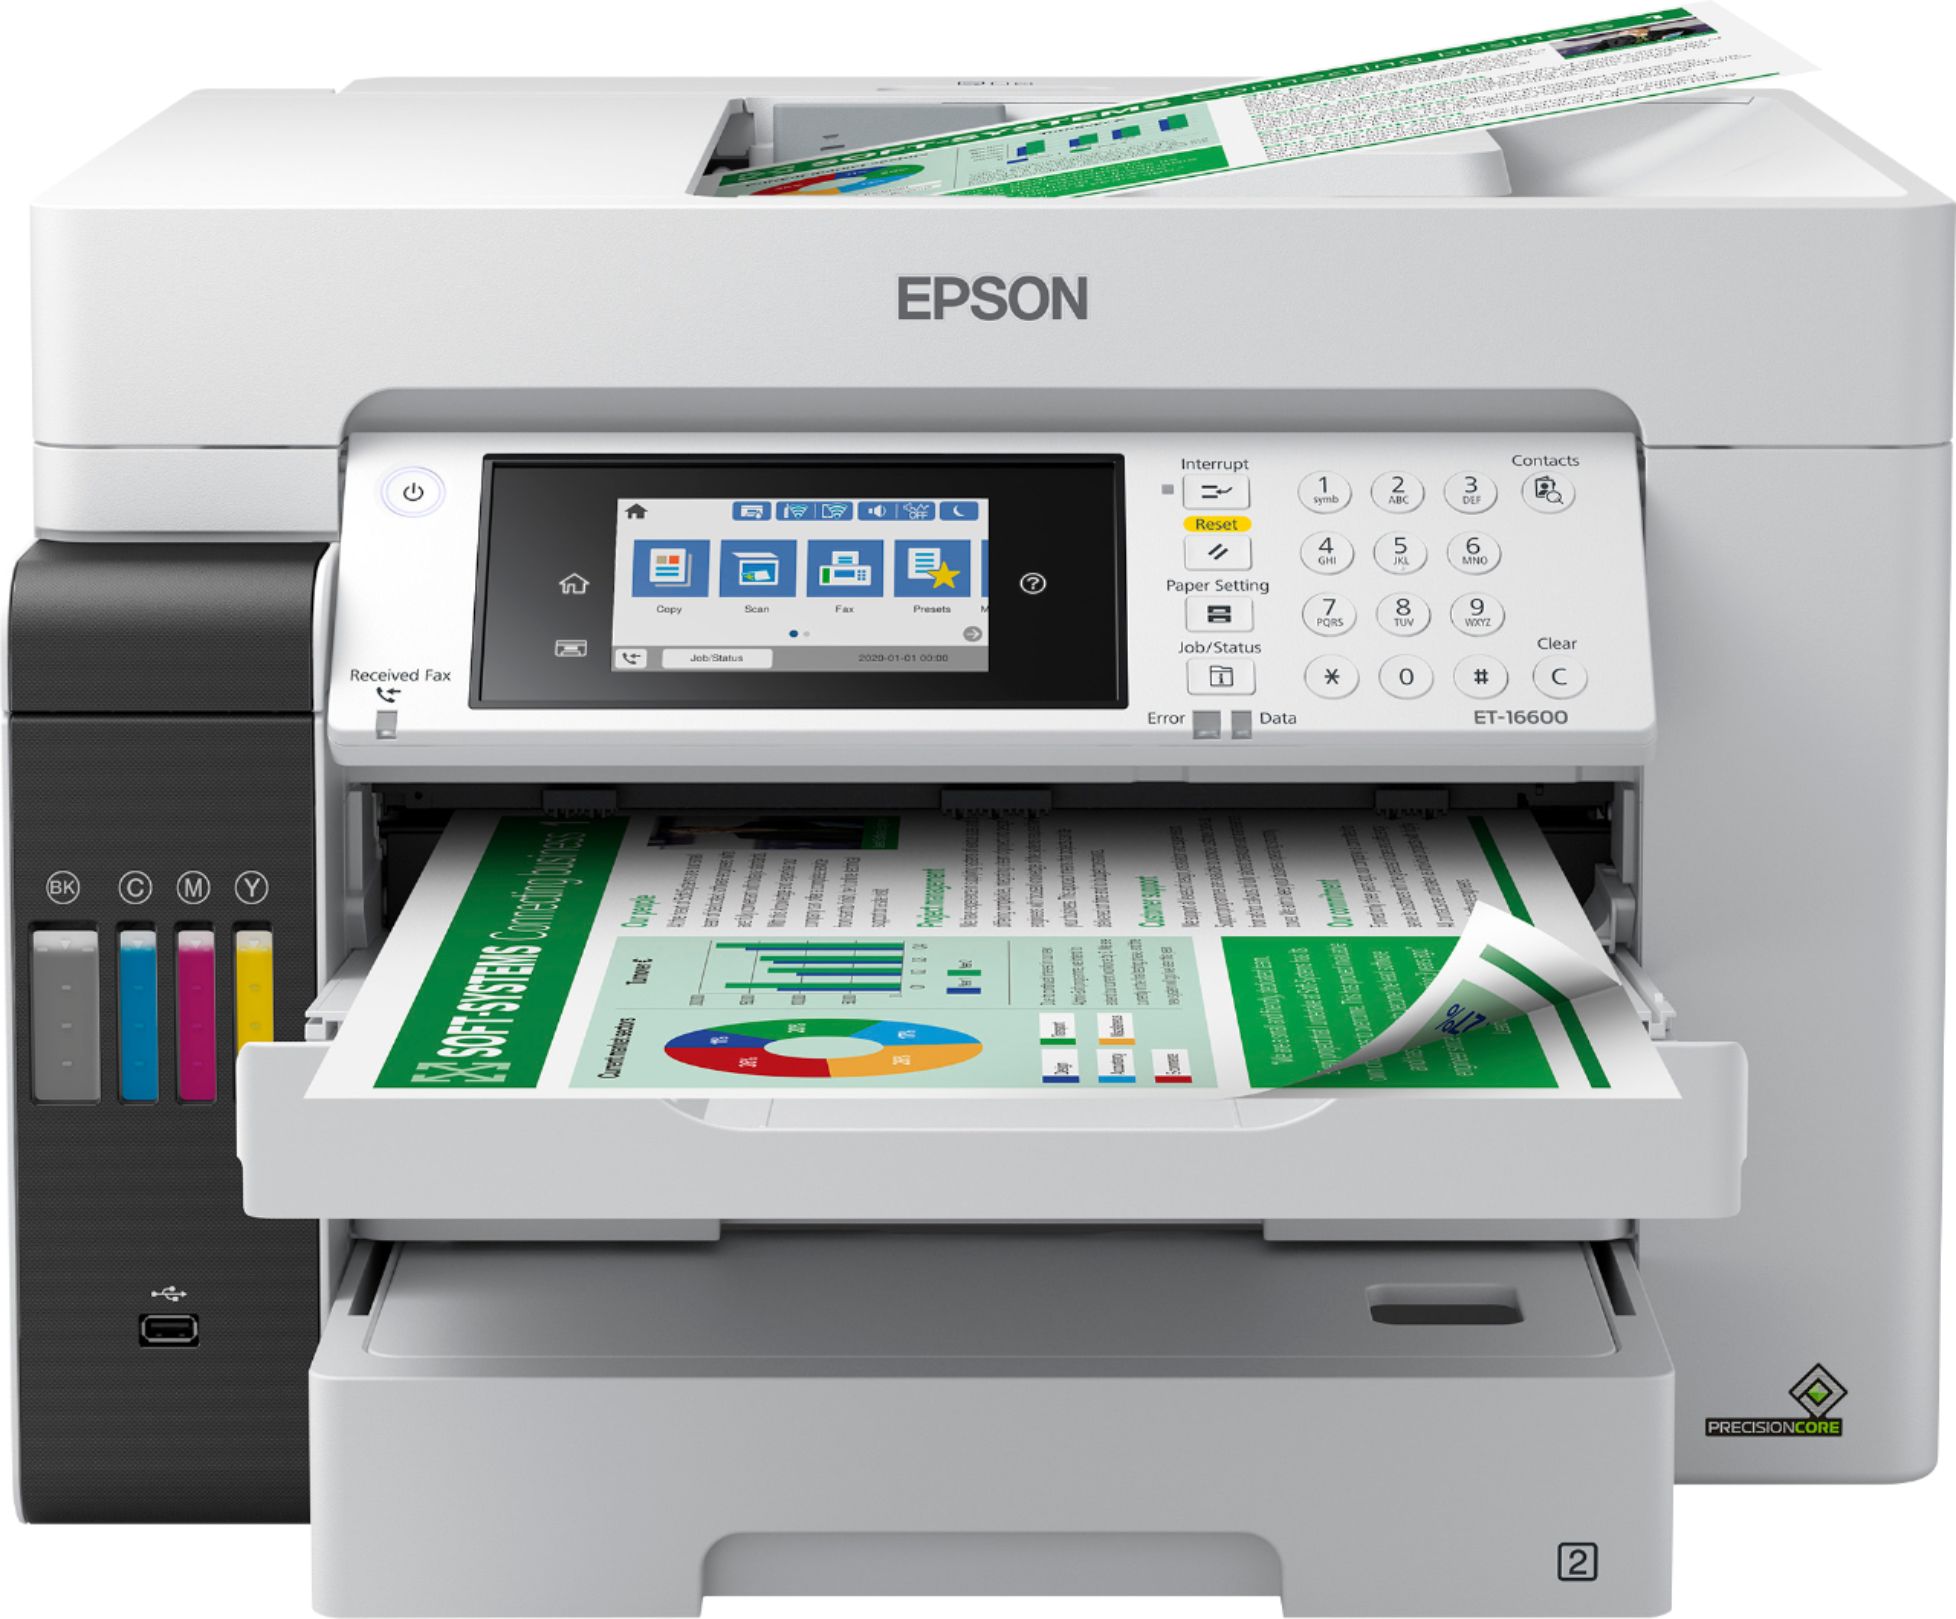 Imprime / Escaner / Copiadora / Fax Epson EcoTank ET-16600 Impresora Alto Rendimiento Multifunción WiFi A3+ con Impresión Doble Cara Automática Gran Velocidad de Impresión y Escaneado 